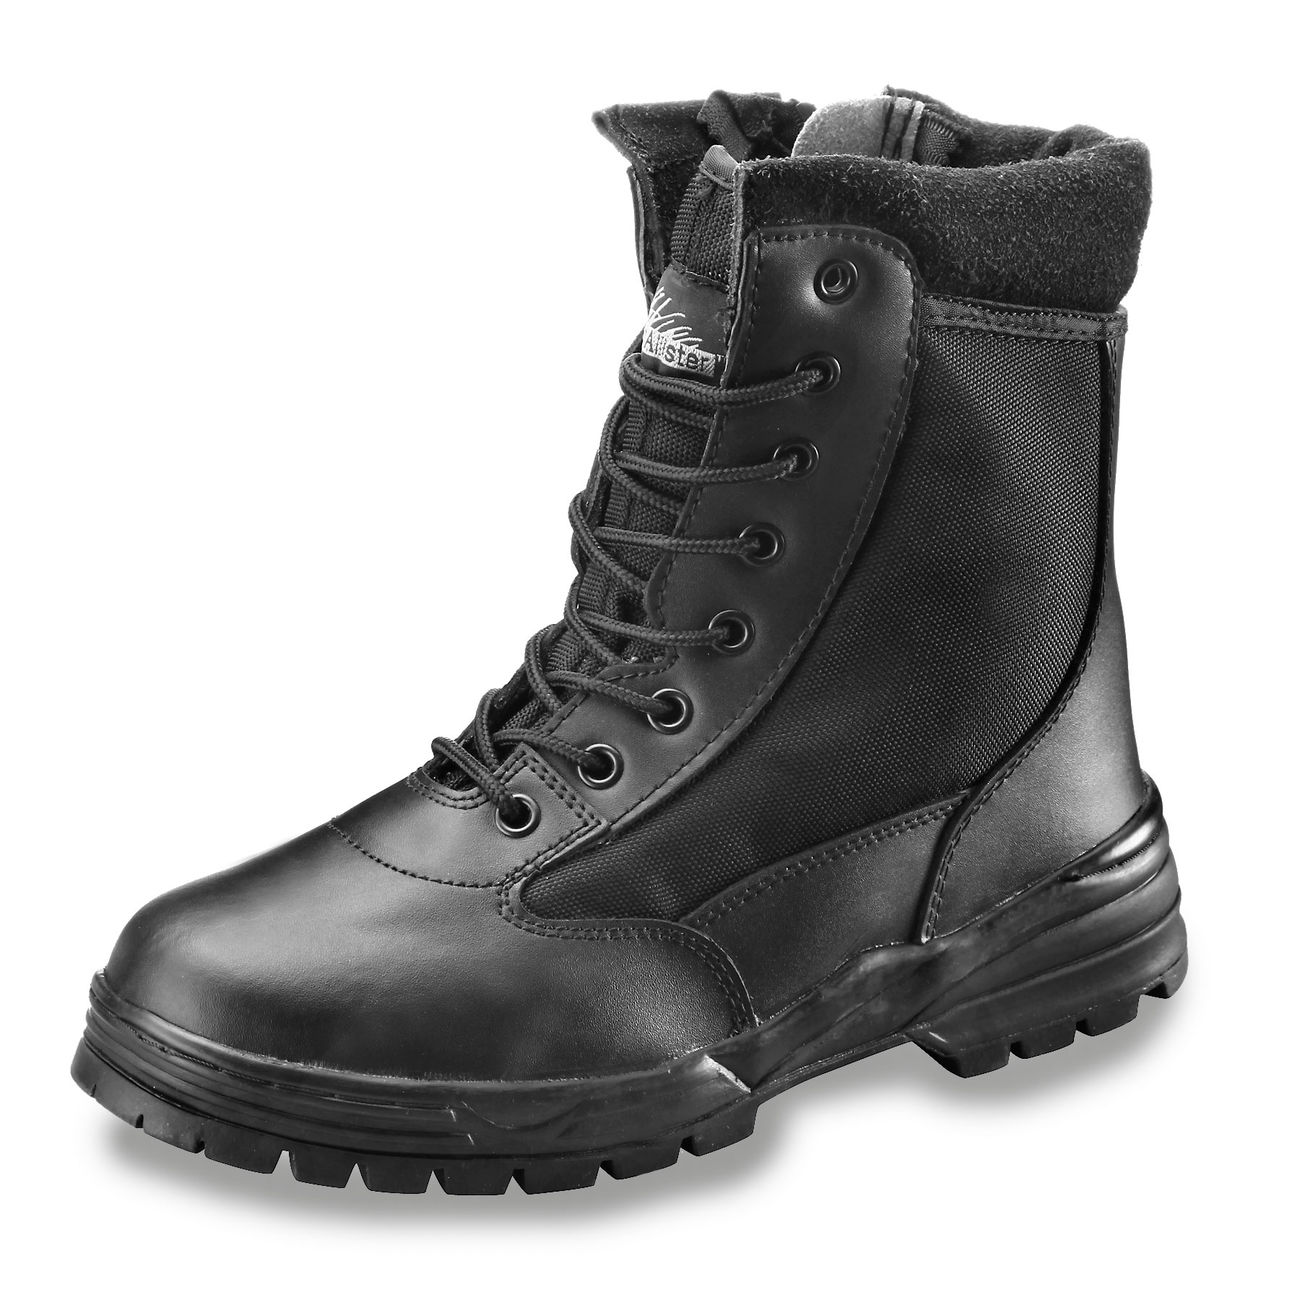 McAllister Boots PatriotStyle, m. Zipper, schwarz Bild 5